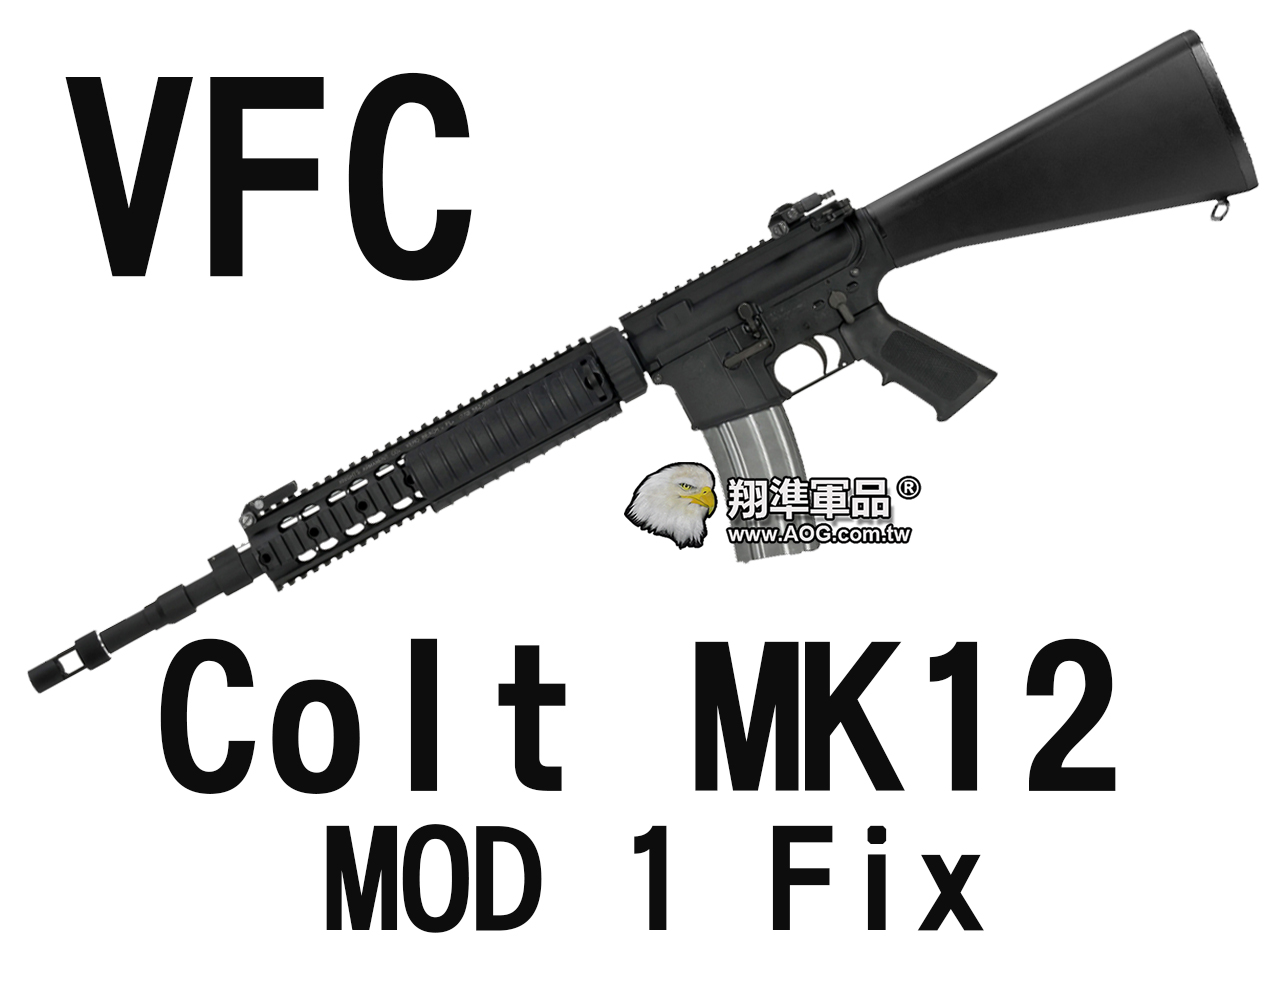 【翔準軍品AOG】【VFC】Colt MK12 MOD1 Fix 固定托 魚骨版 電動槍 狙擊槍 黑色 VF1-LMK12M1-BK02